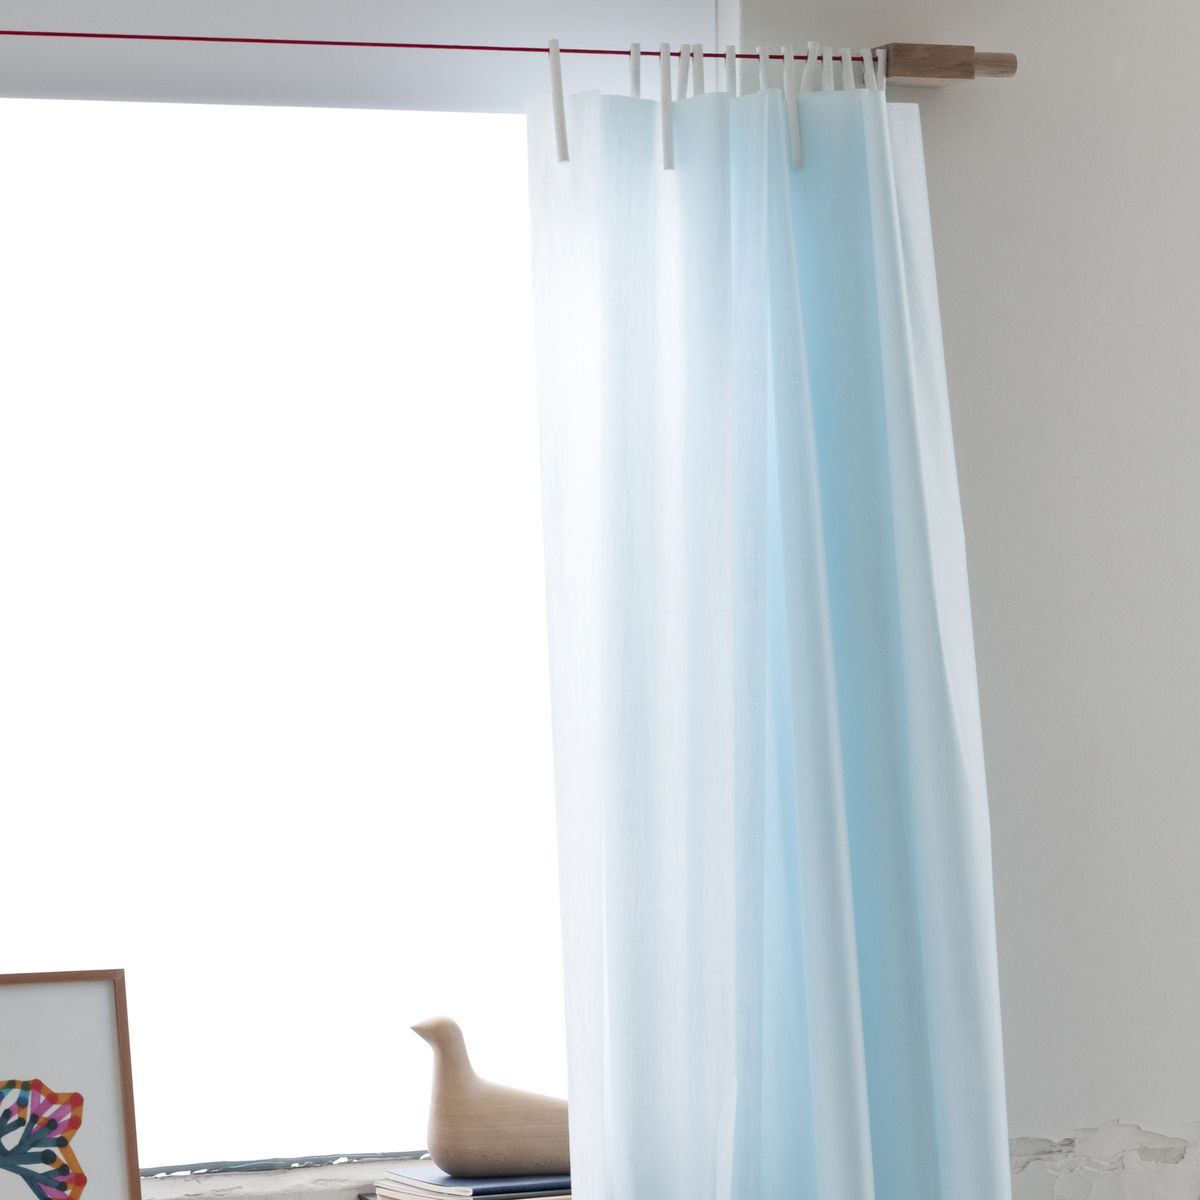 Trend spot´16 - long textile curtains